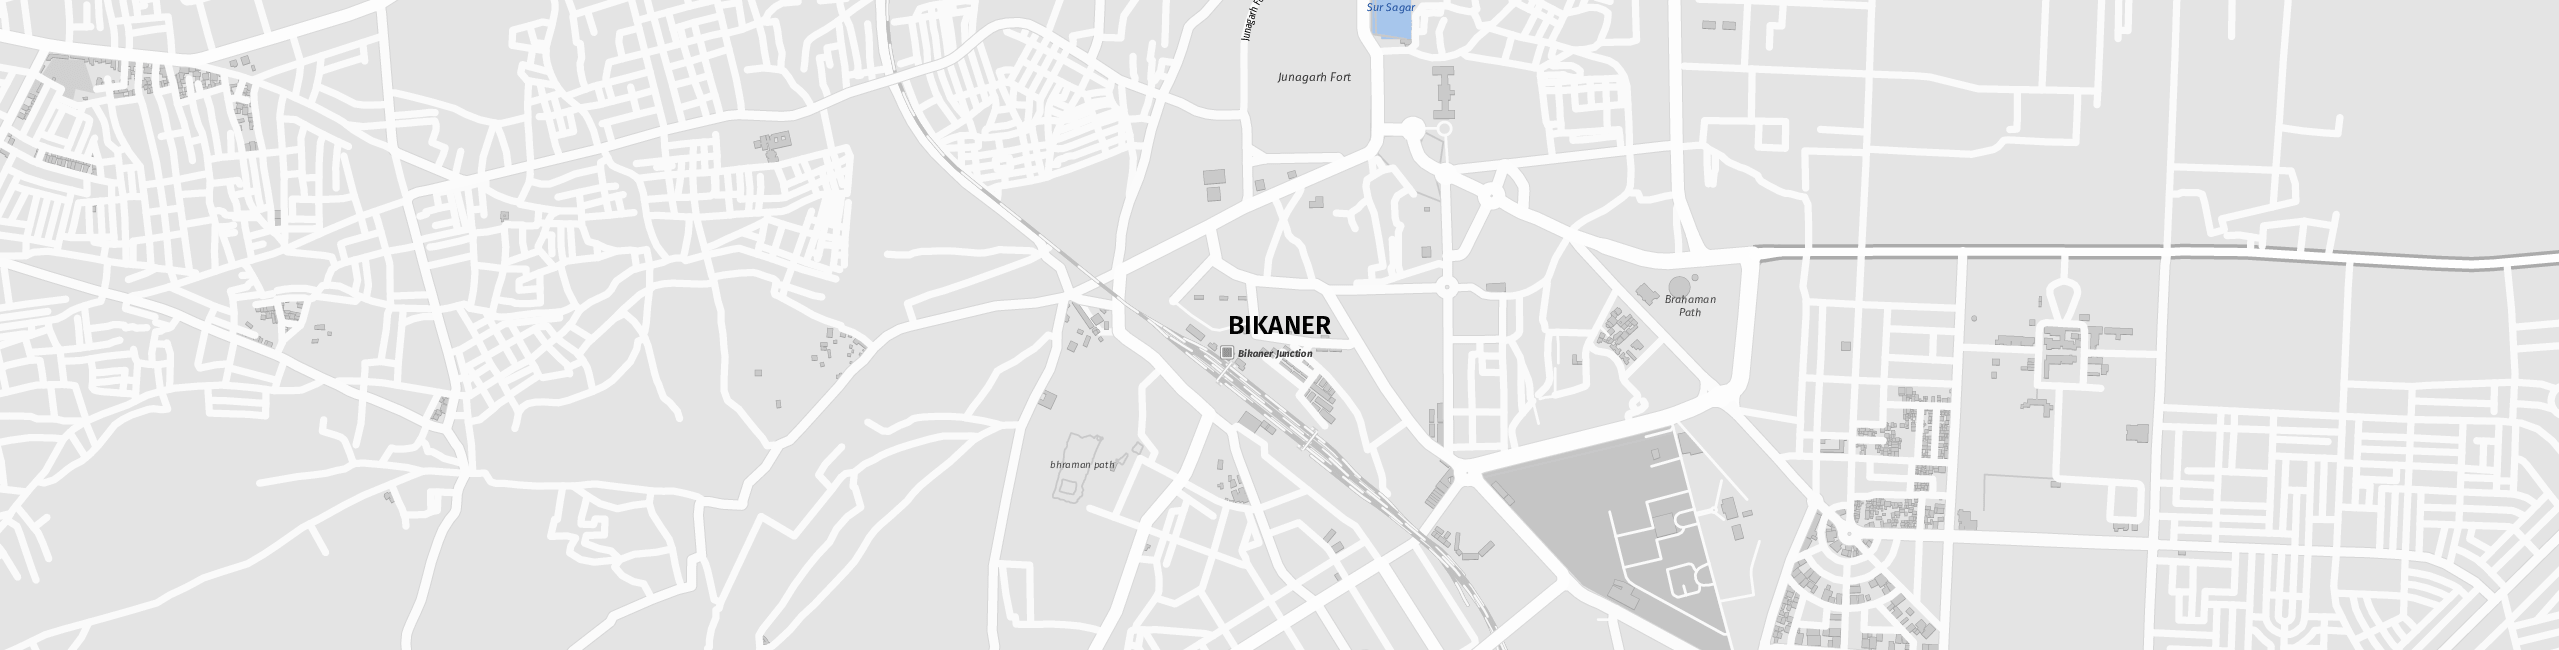 Stadtplan Bikaner zum Downloaden.